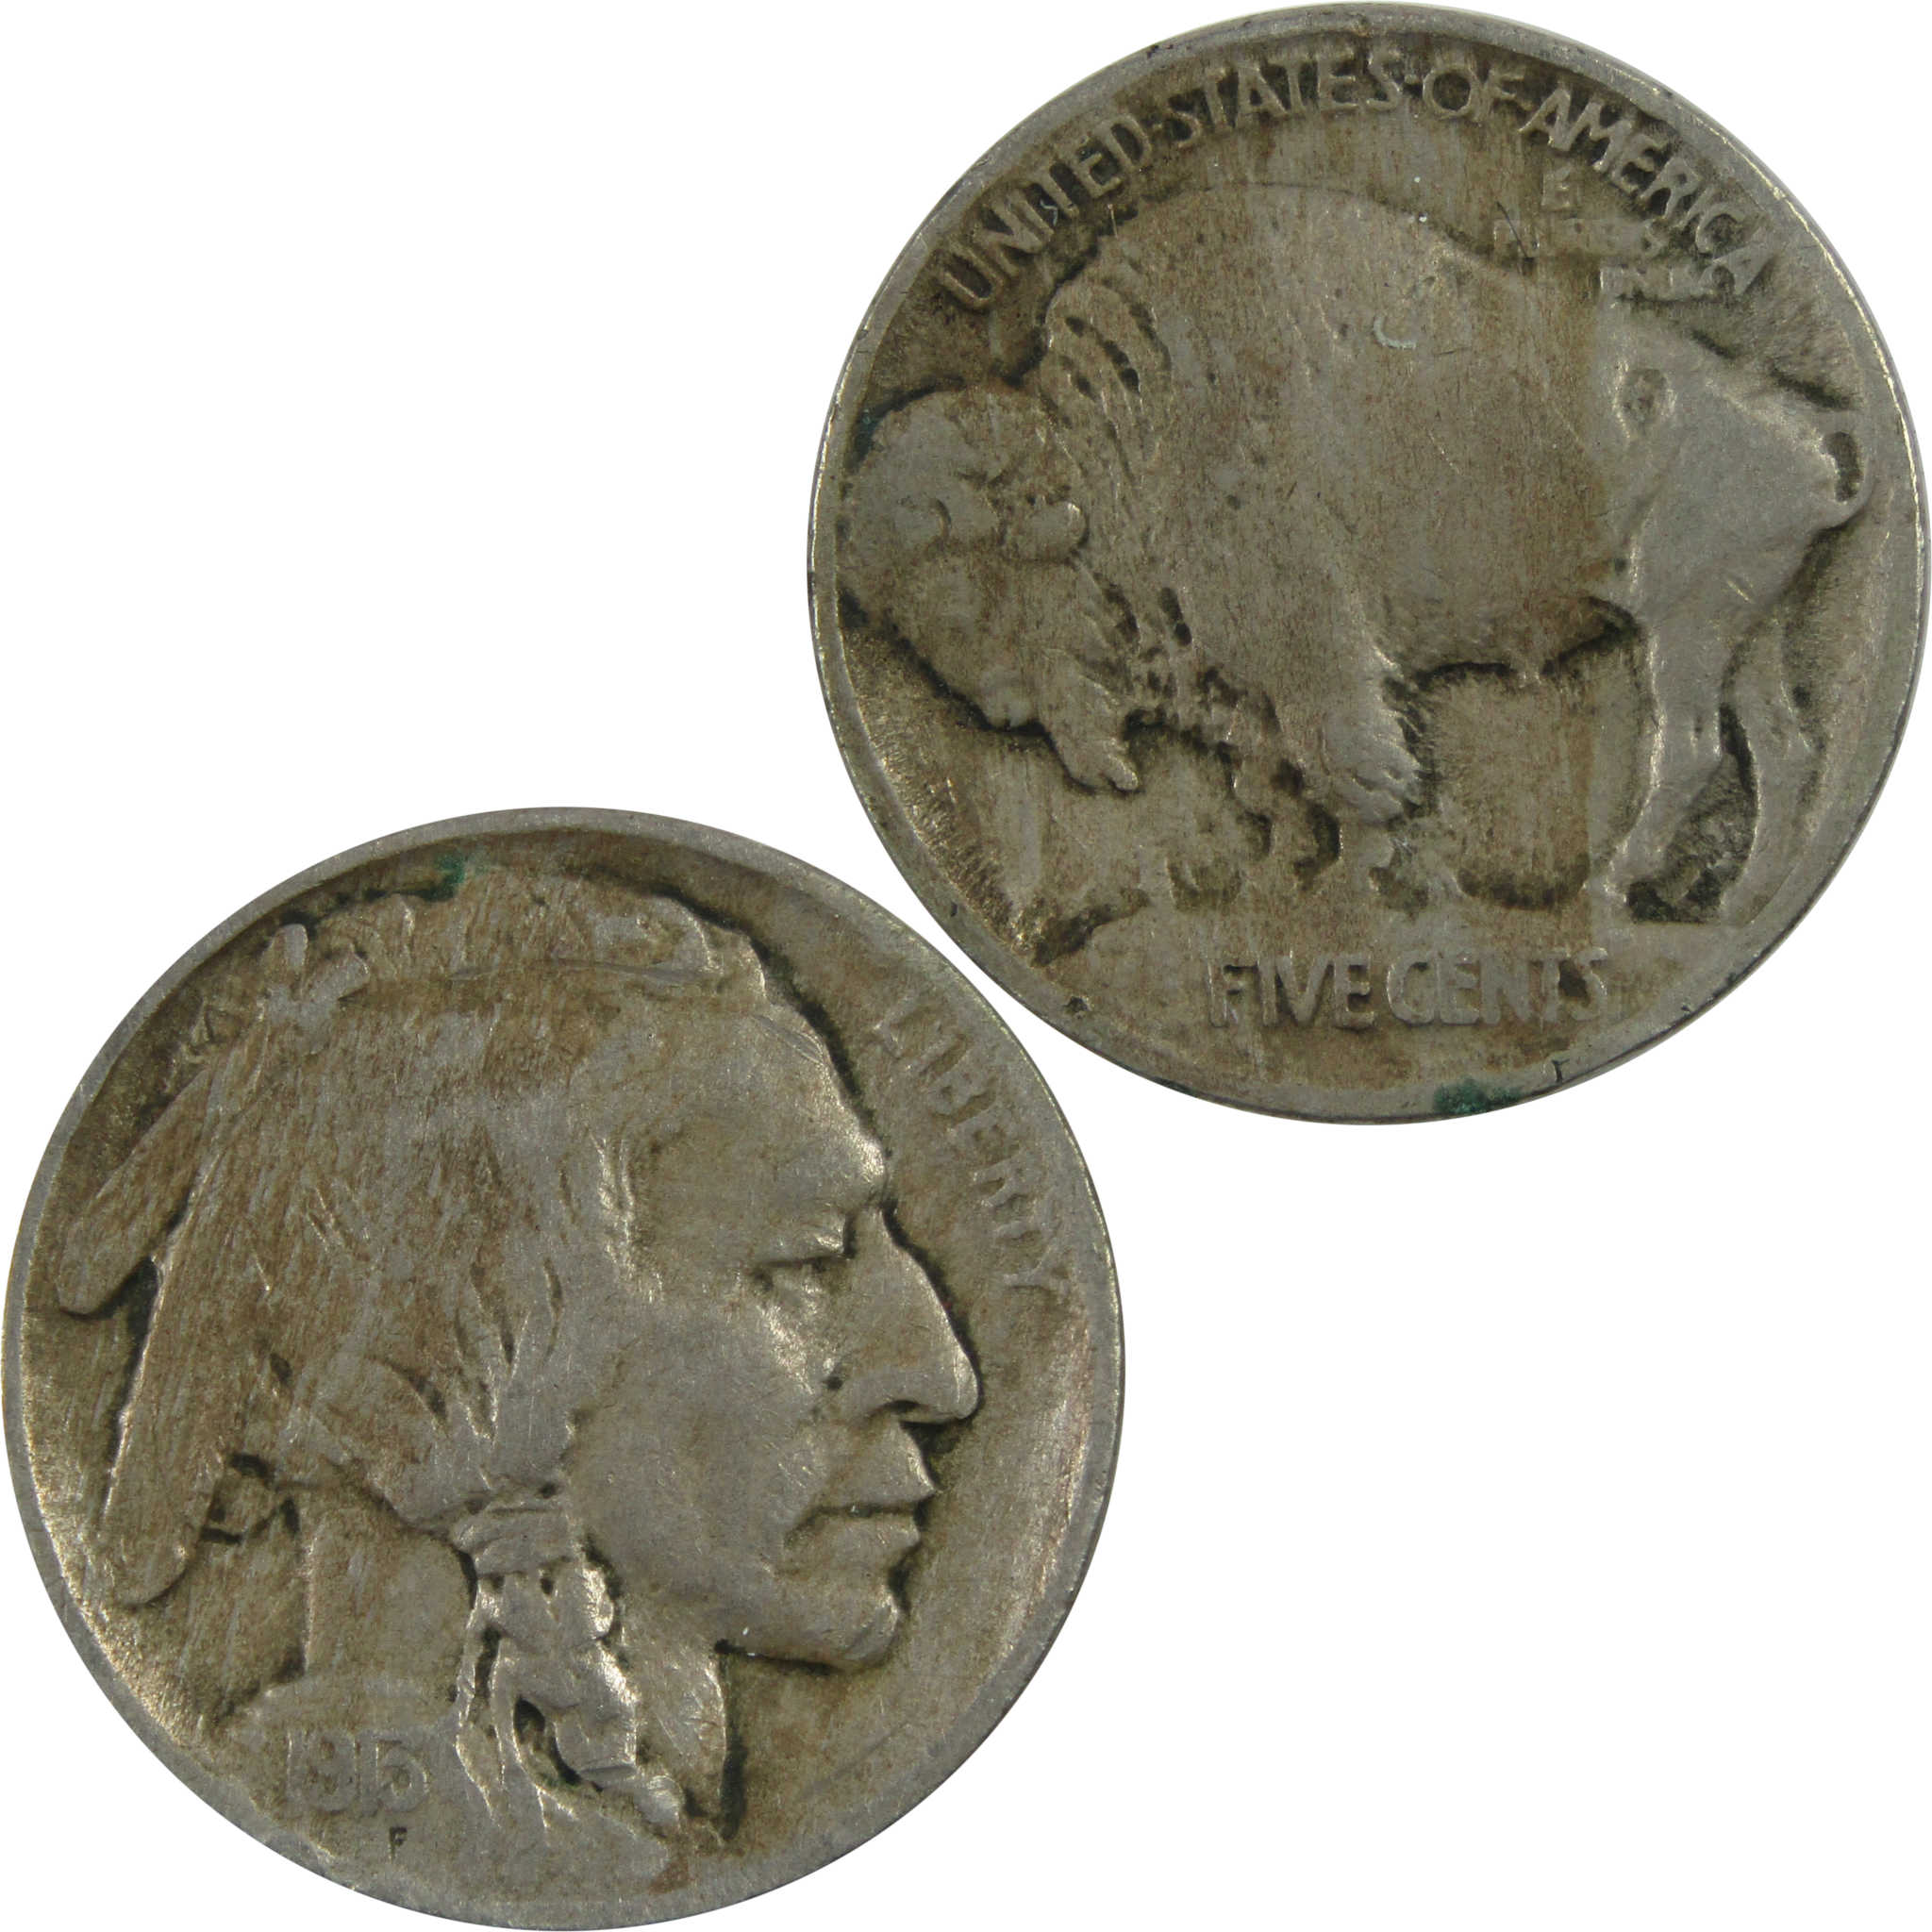 1913 Type 1 Indian Head Buffalo Nickel F Fine 5c Coin SKU:I13471